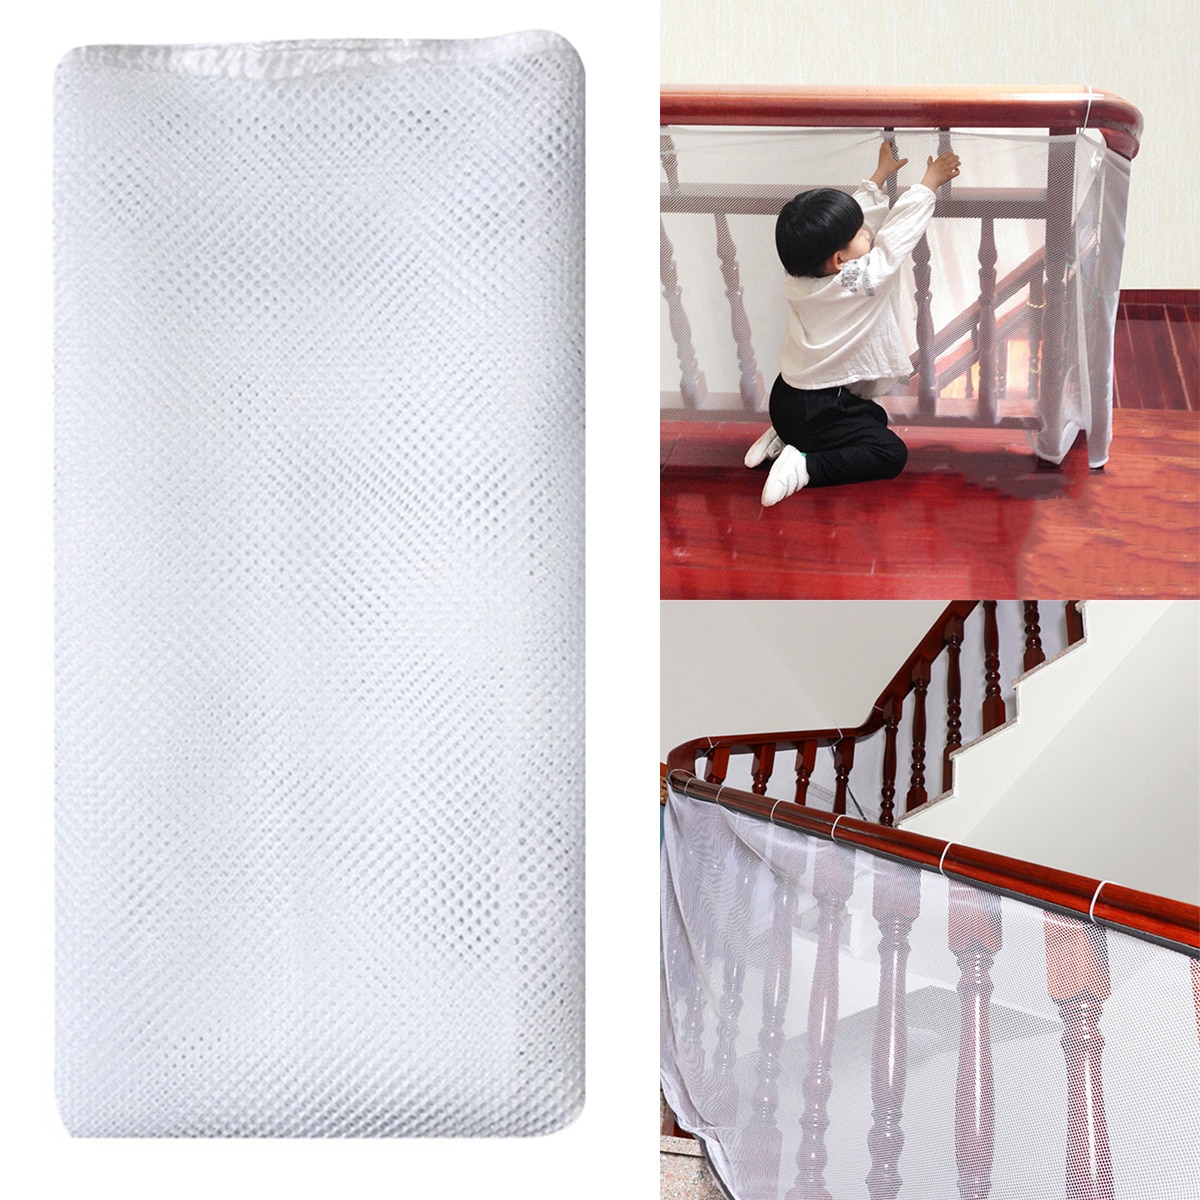 3m børnetrapper sikkerhedsnet tykt hårdt mesh netbeskyttelse skinne altan trappehegn babyhegn trappe net dekoration